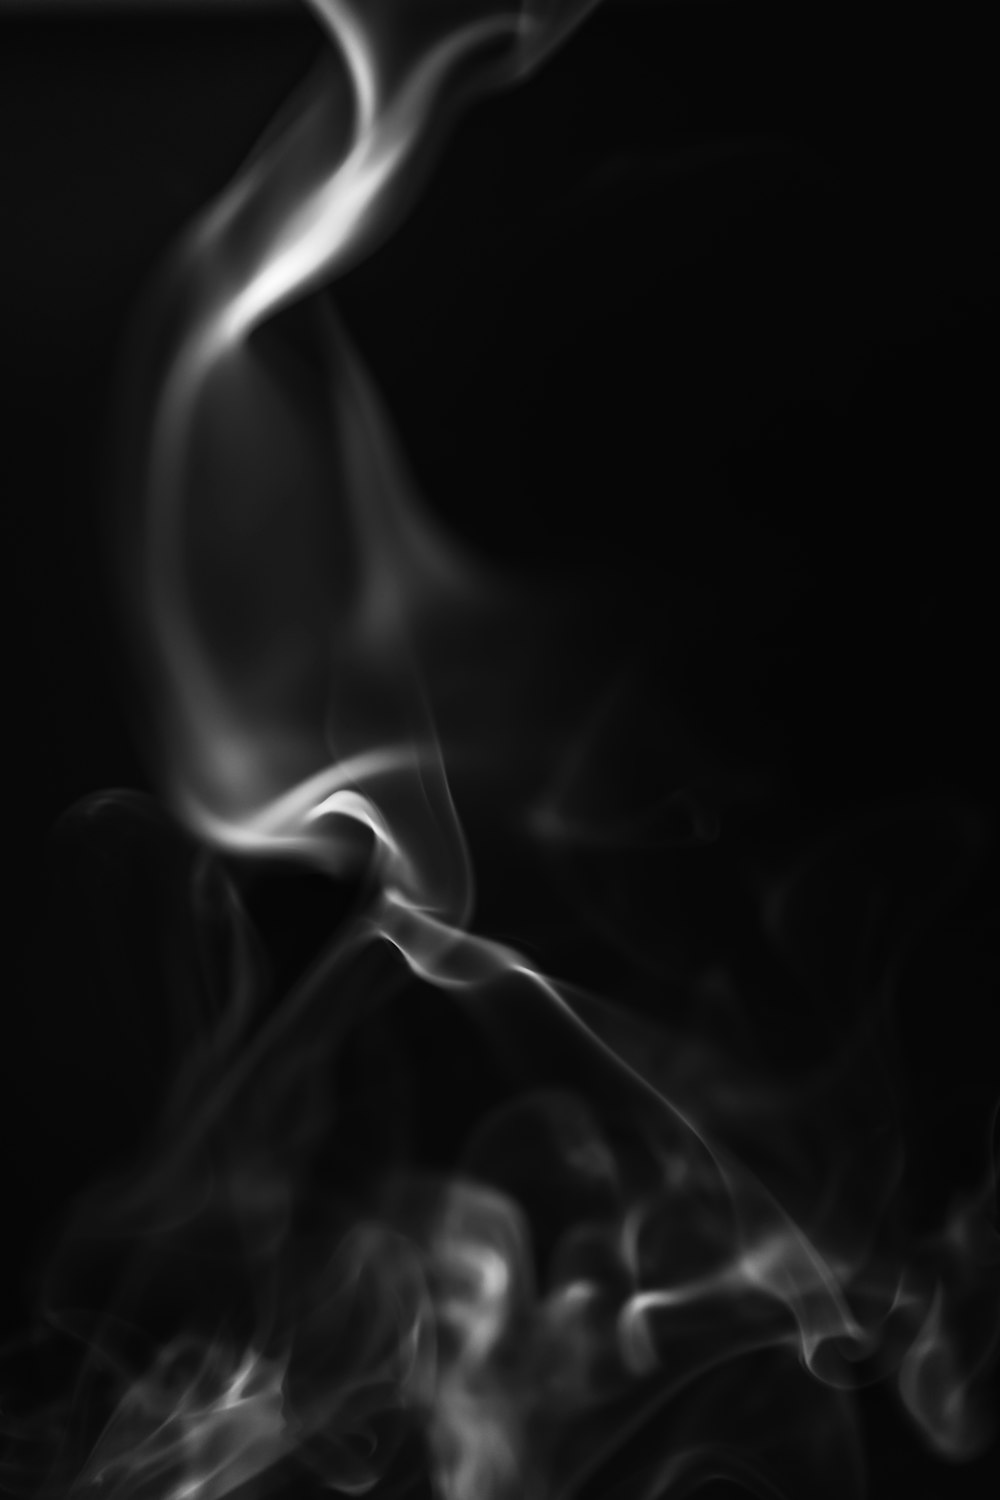 fumée blanche sur fond noir